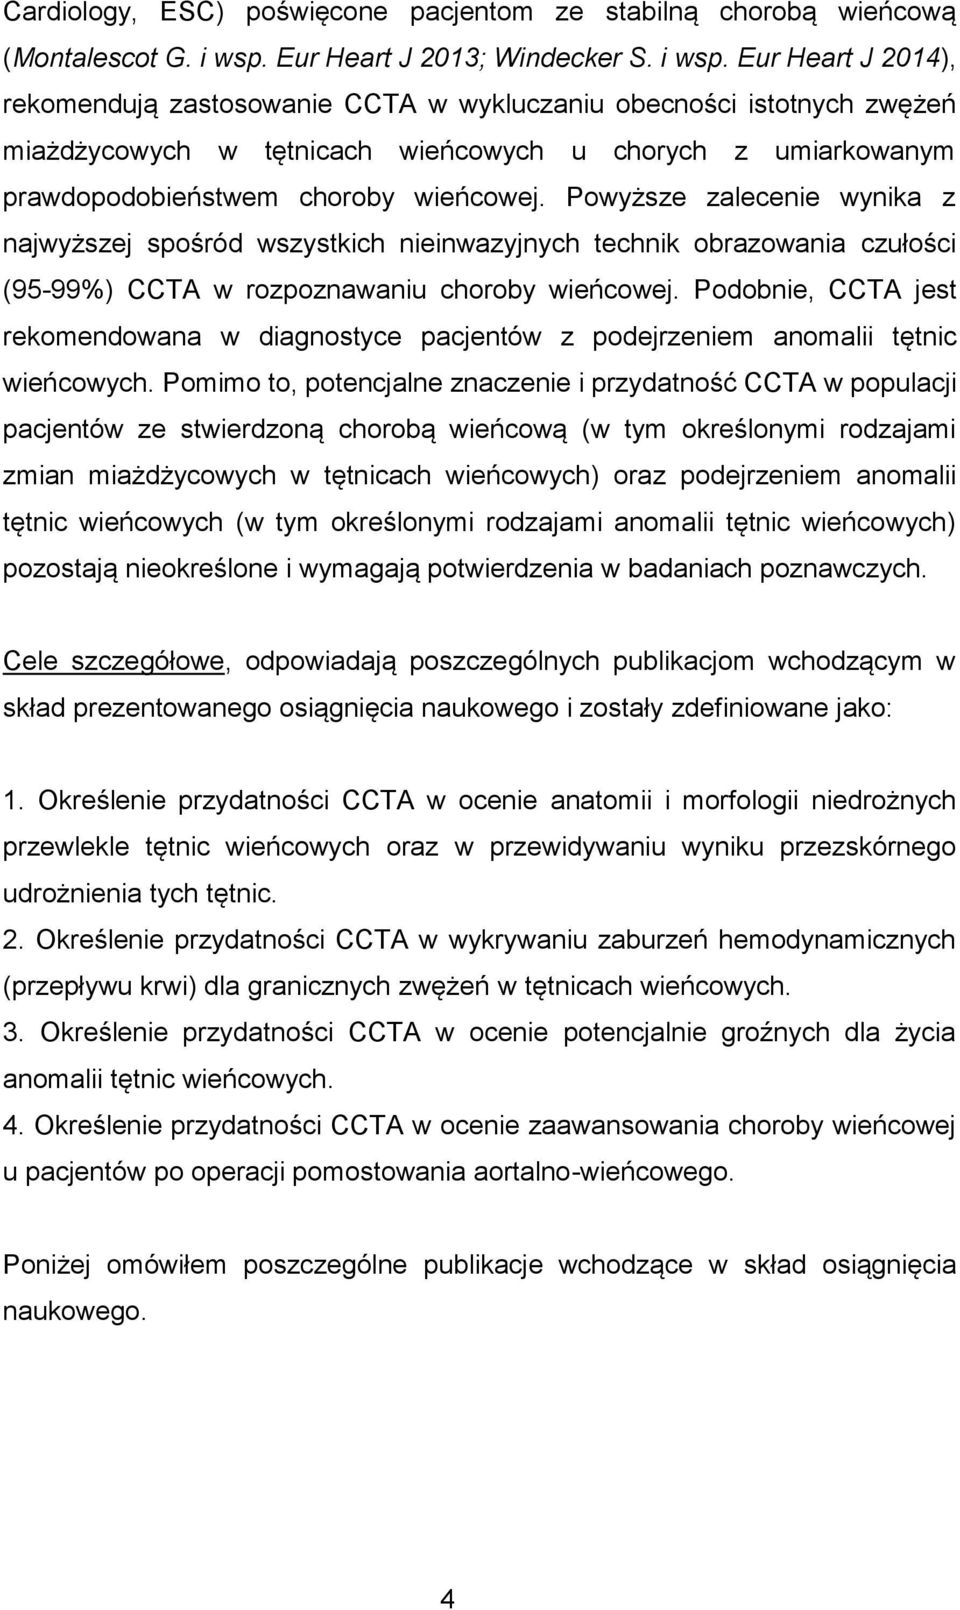 Eur Heart J 2014), rekomendują zastosowanie CCTA w wykluczaniu obecności istotnych zwężeń miażdżycowych w tętnicach wieńcowych u chorych z umiarkowanym prawdopodobieństwem choroby wieńcowej.